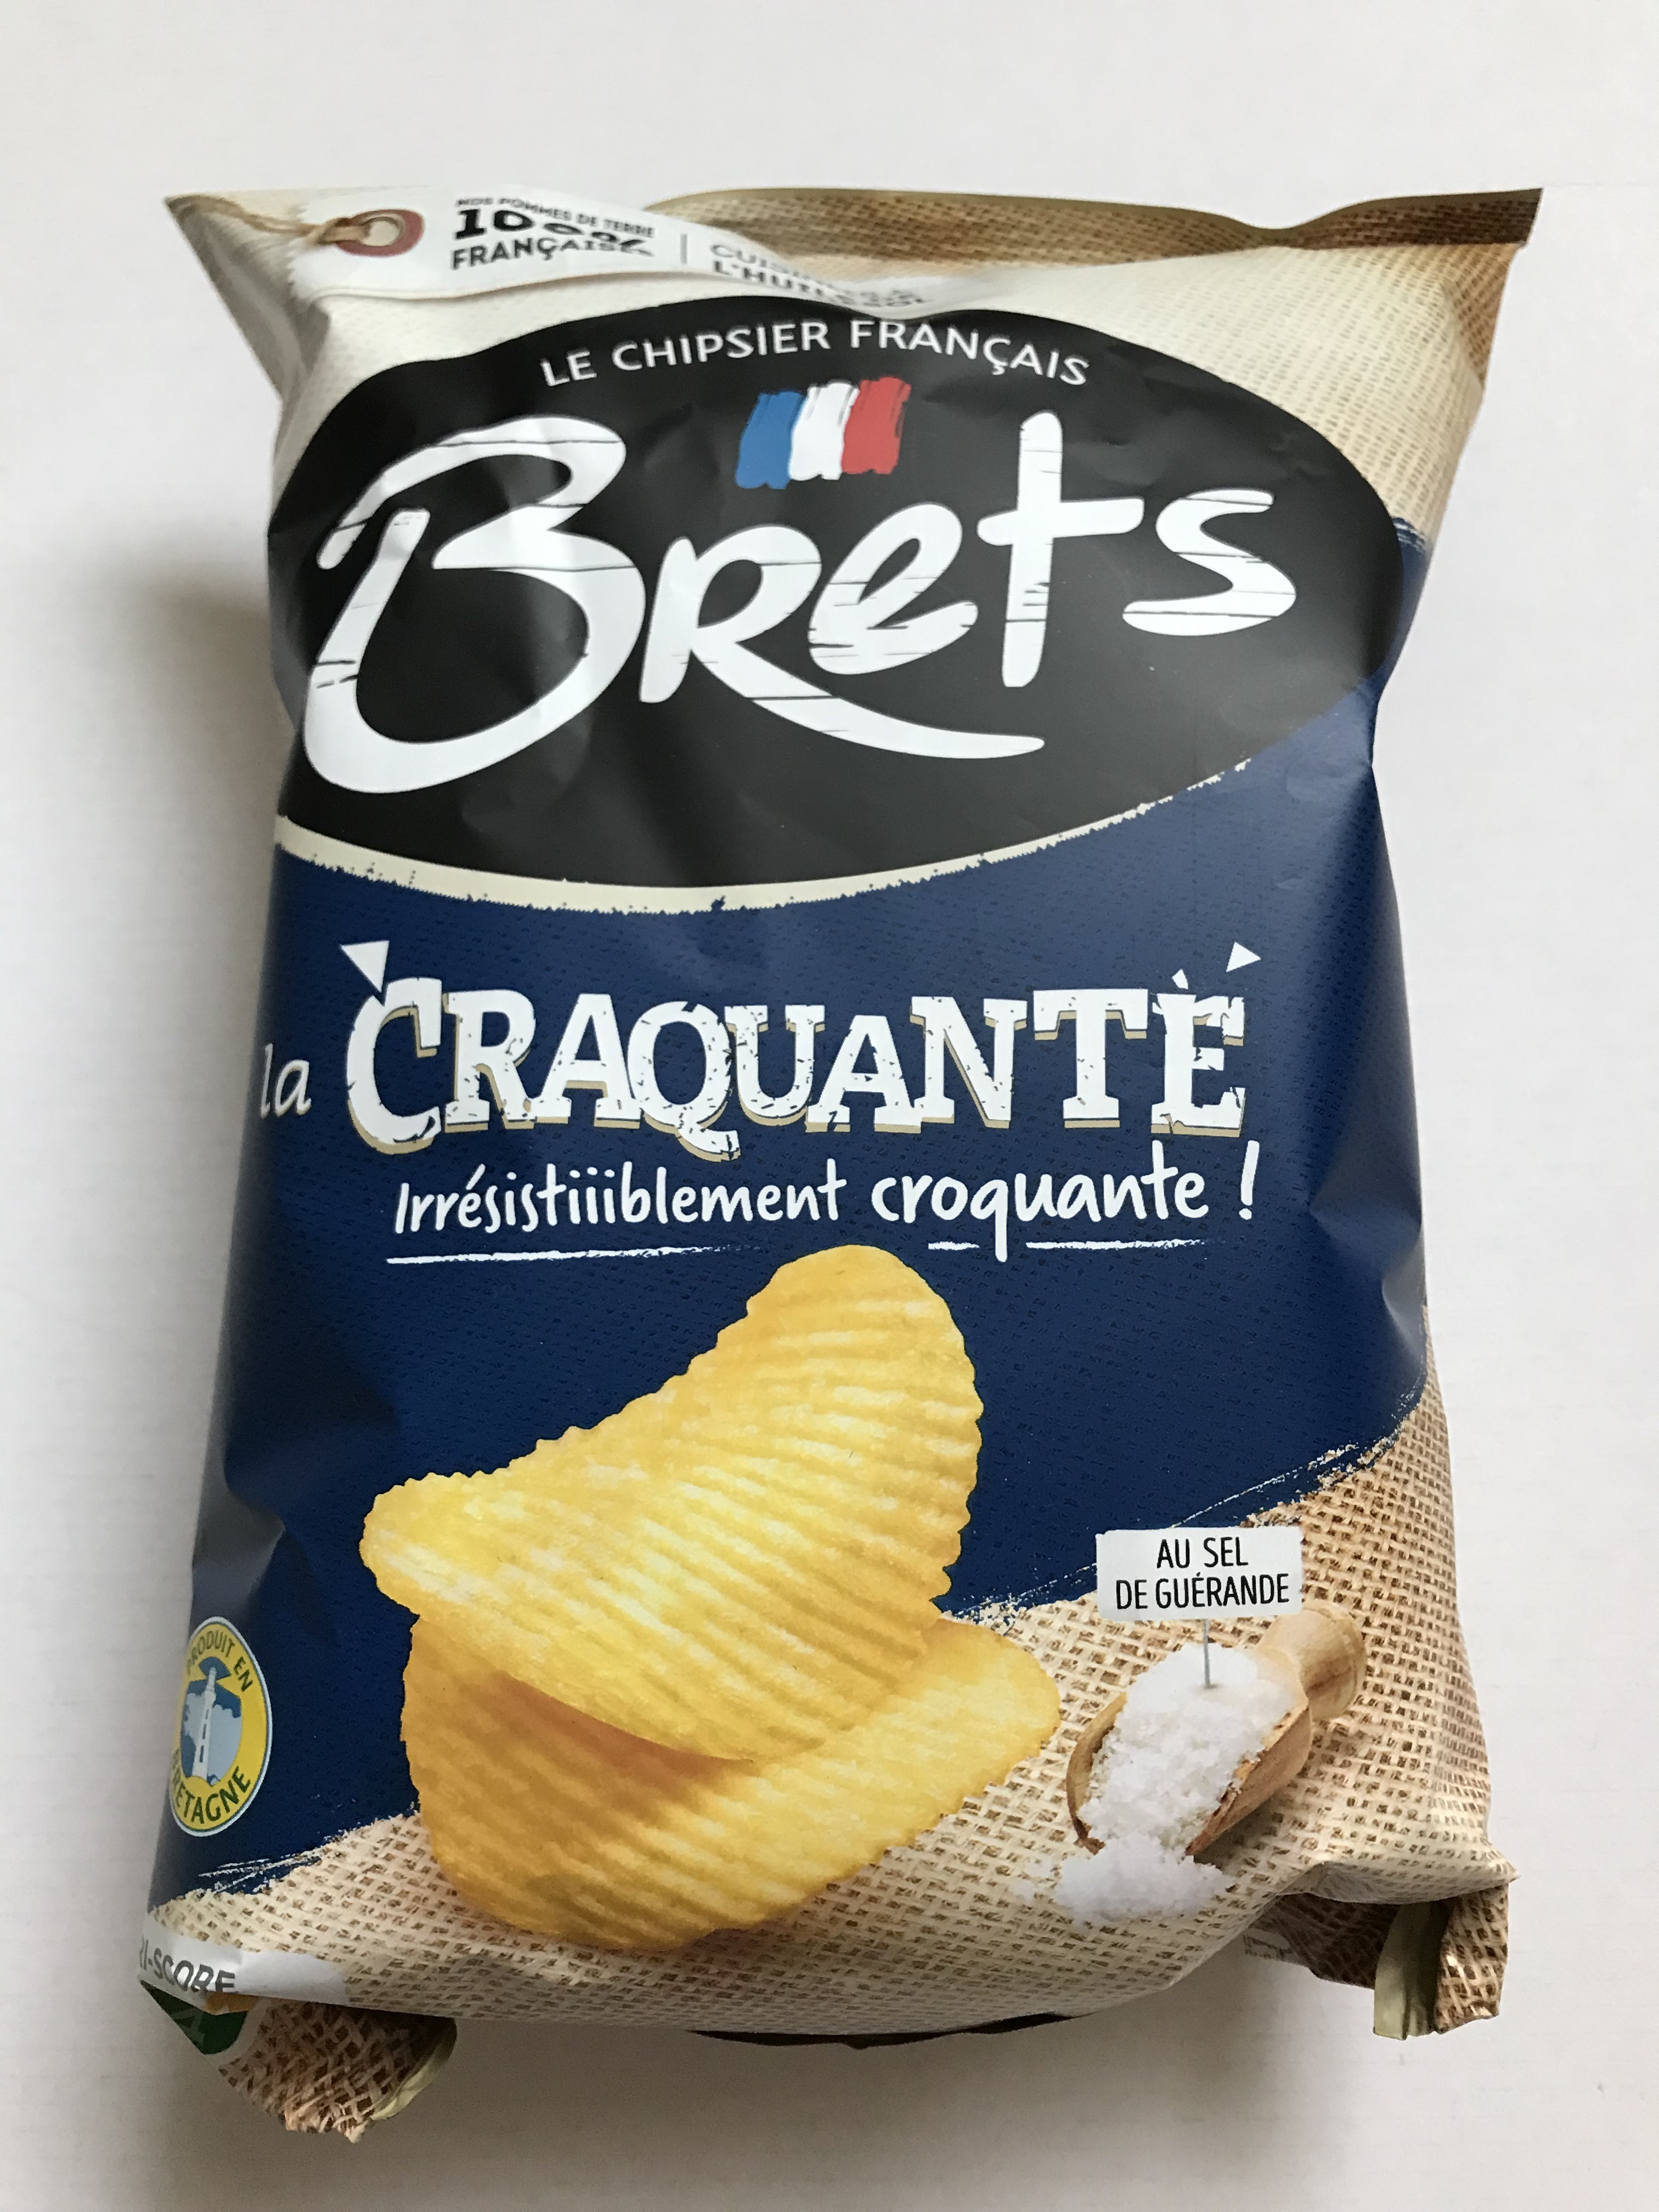 Brets (Le Chipsier Français) la craquante Reviews